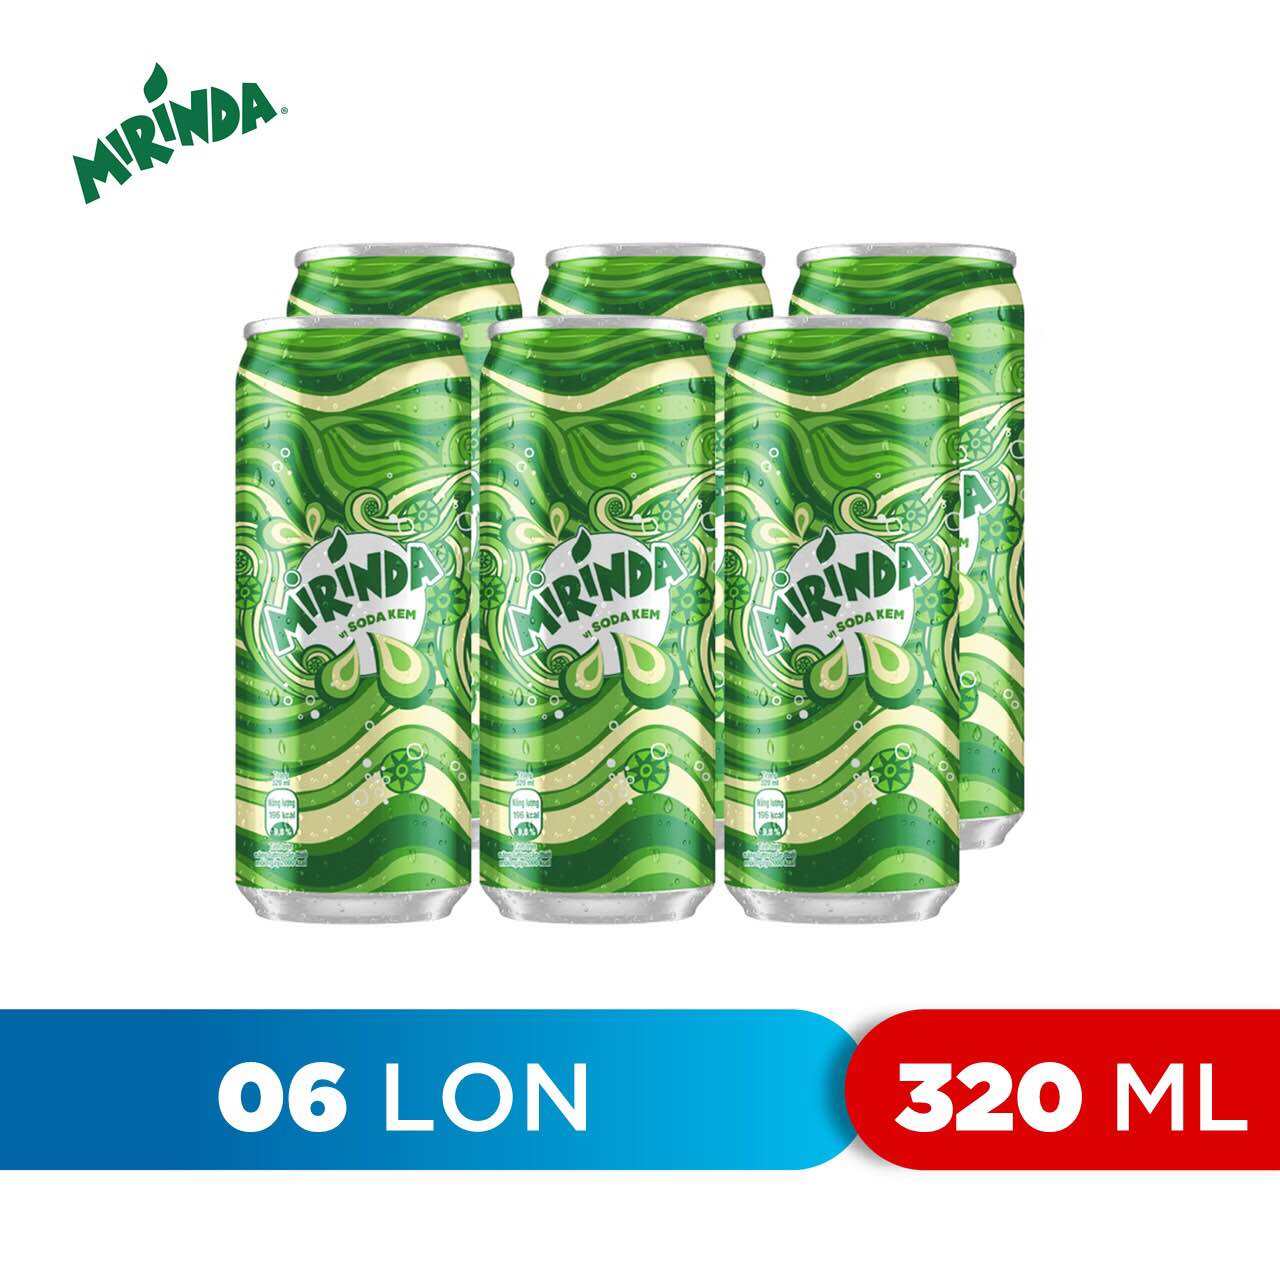 Mirinda Soda Kem 320Ml lốc 6 lon